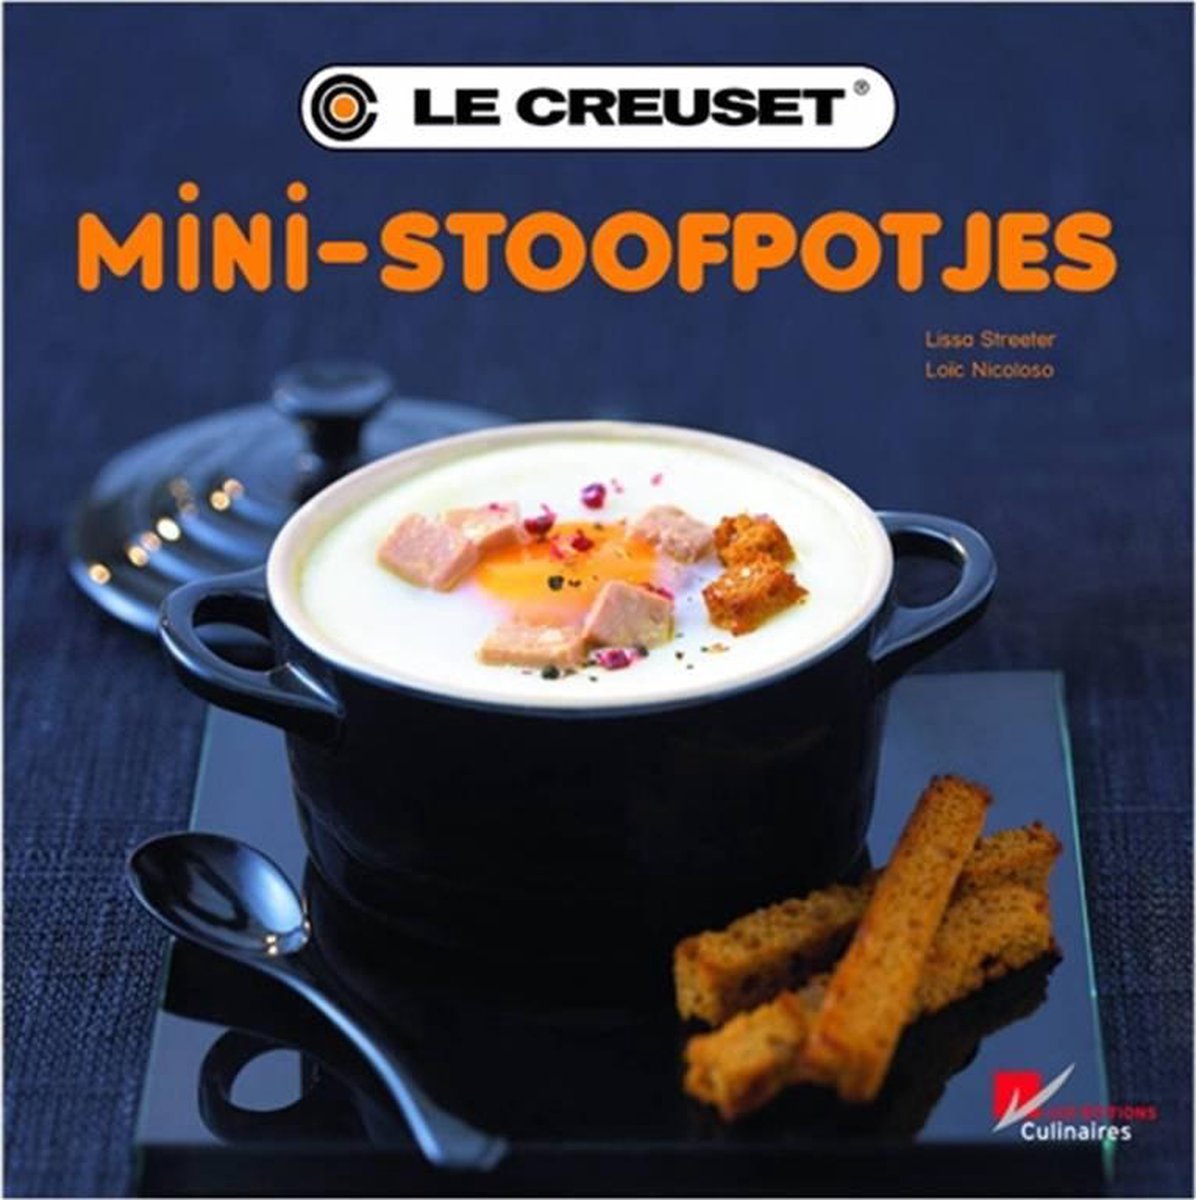 erotisch Portiek schrijven Mini-stoofpotjes - Le Creuset | Tweedehands | Boekenbalie